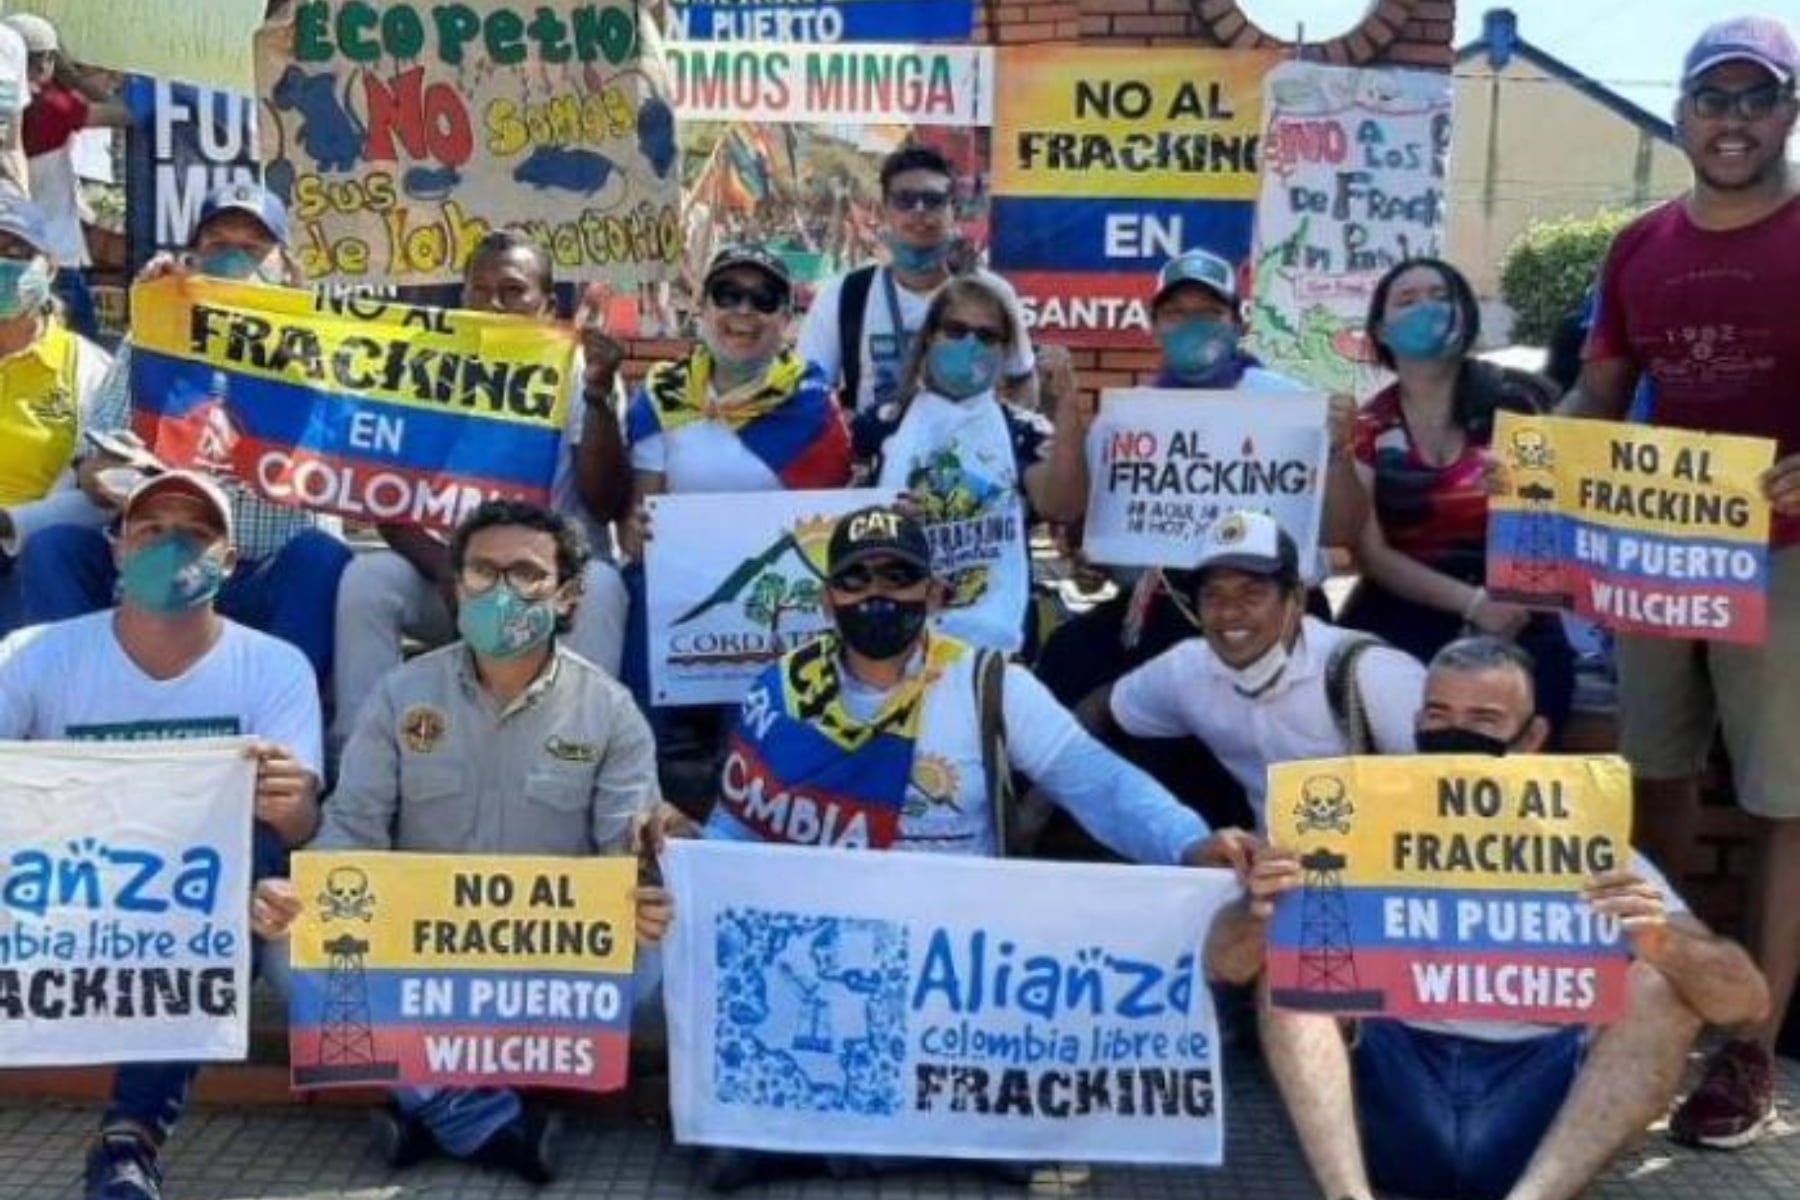 Juez suspende temporalmente piloto de fracking en Puerto Wilches, Santander  - LARAZON.CO